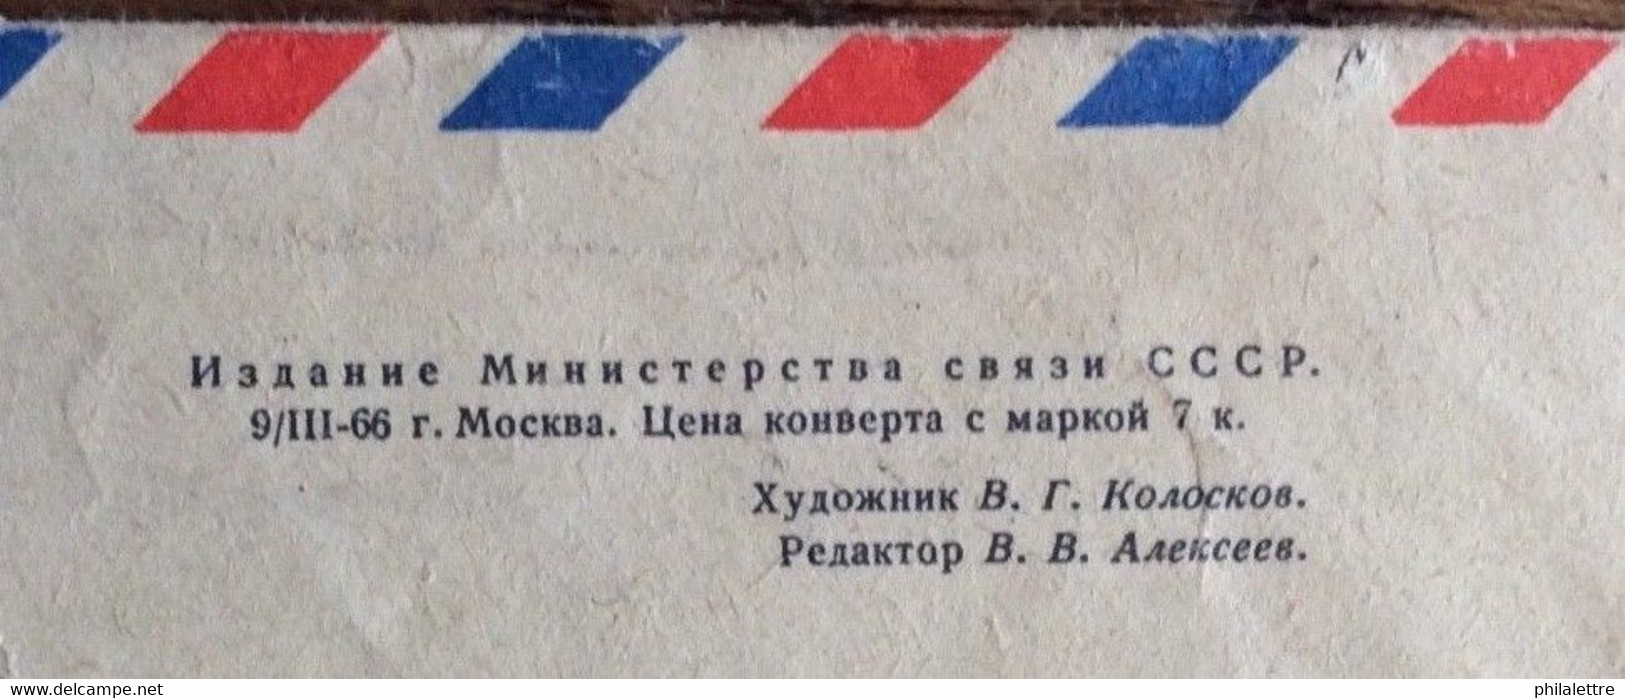 URSS Soviet Union - 1967 - Air Postal Cover Moscow Krasnopresnenskaya To France - 1960-69